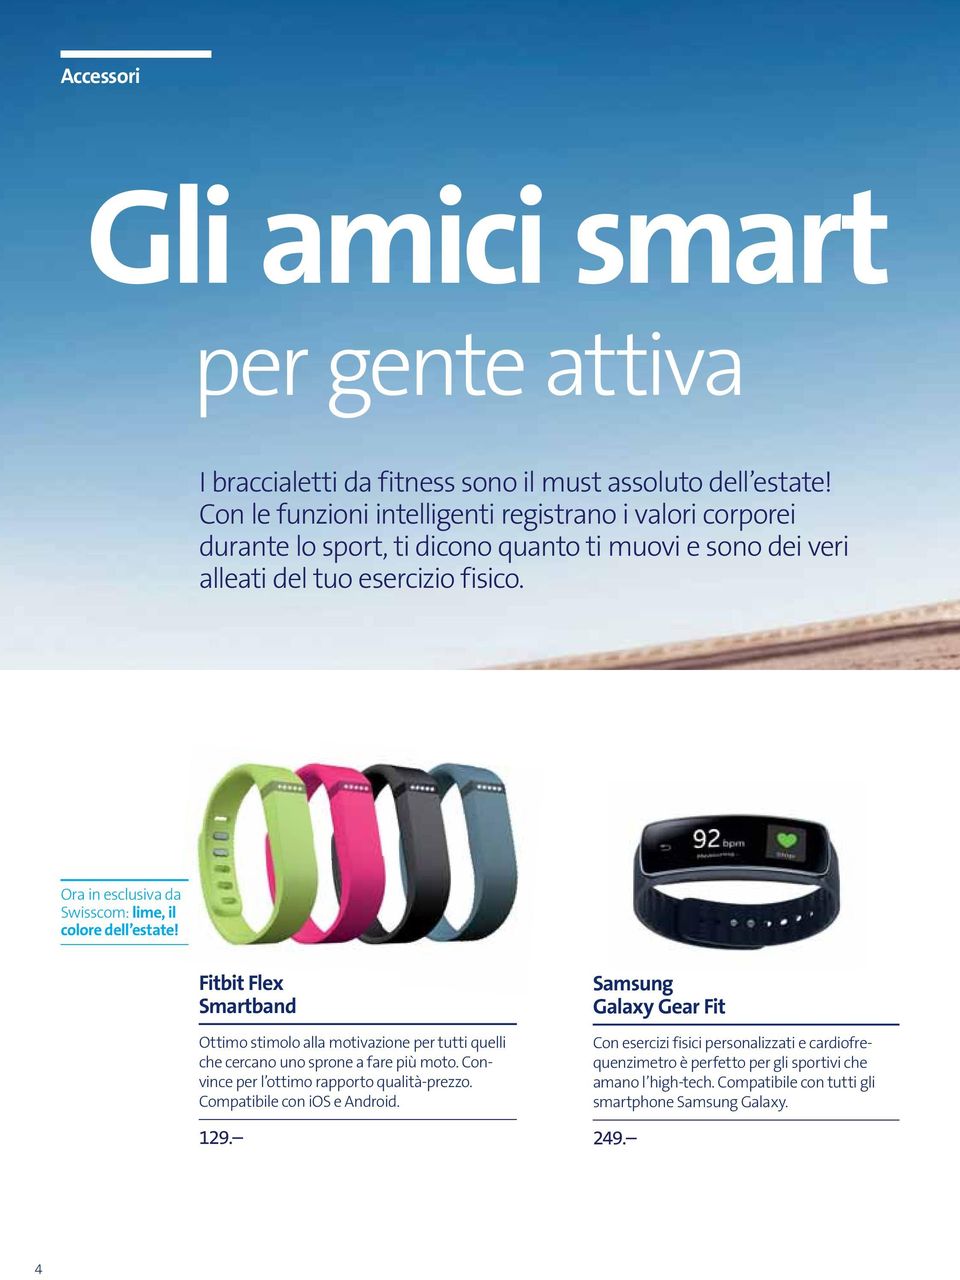 Ora in esclusiva da Swisscom: lime, il colore dell estate! Fitbit Flex Smartband Ottimo stimolo alla motivazione per tutti quelli che cercano uno sprone a fare più moto.